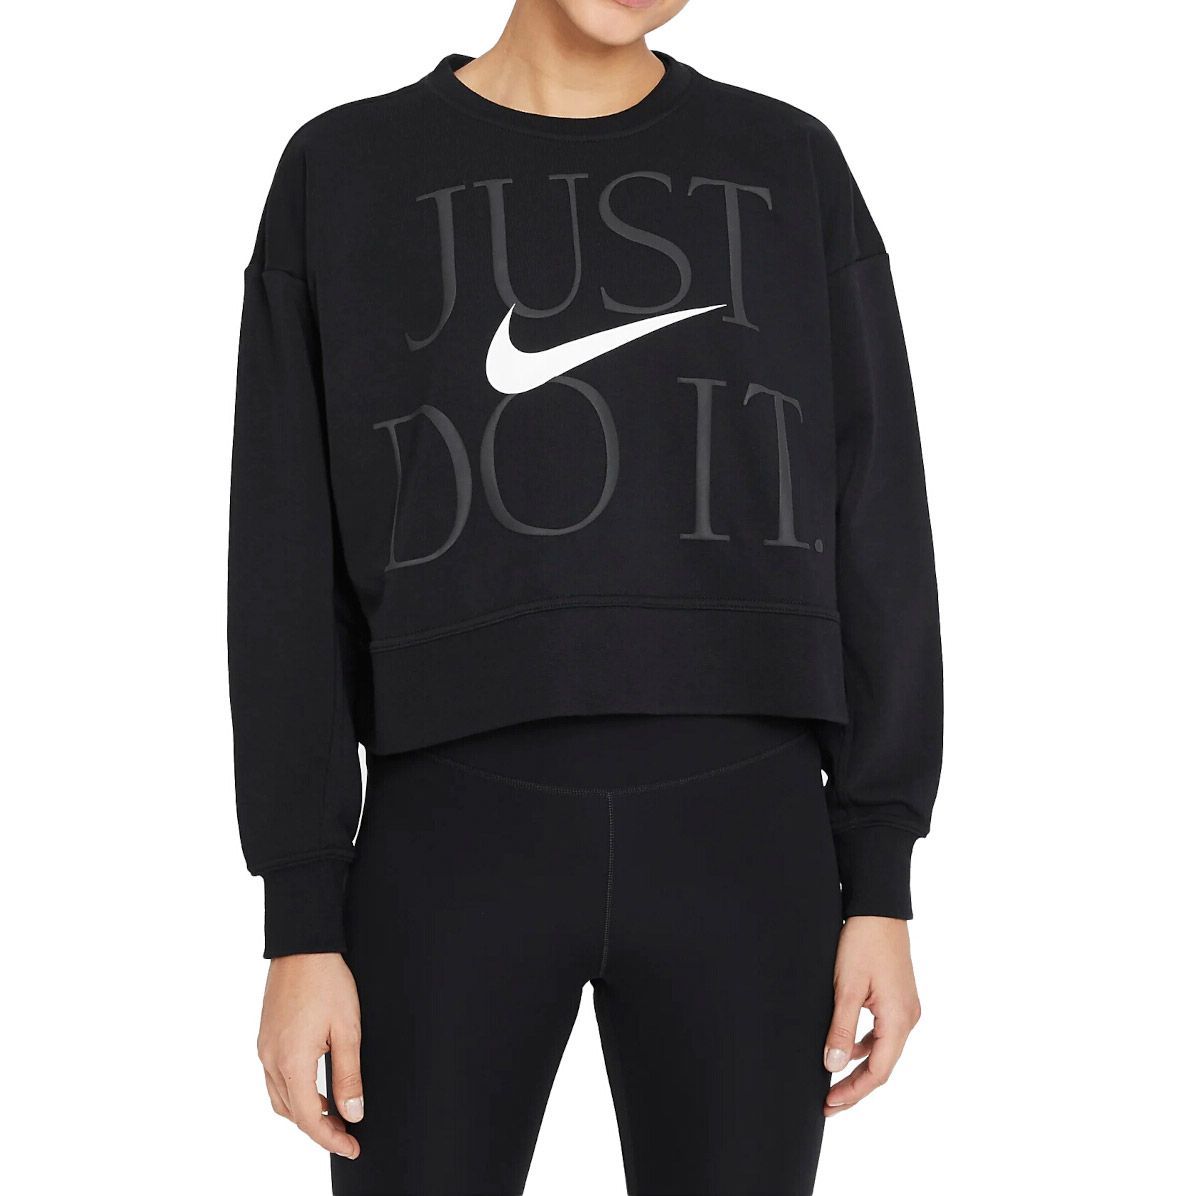 Nike Dri-Fit Get Fit Crew Sweater